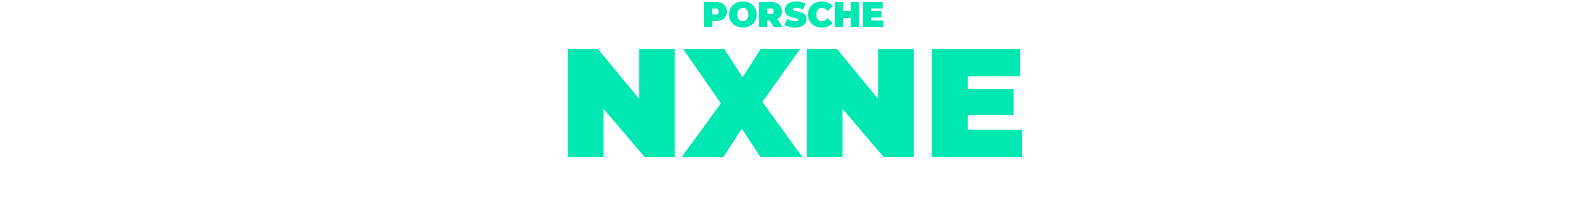 Porsche NXNE